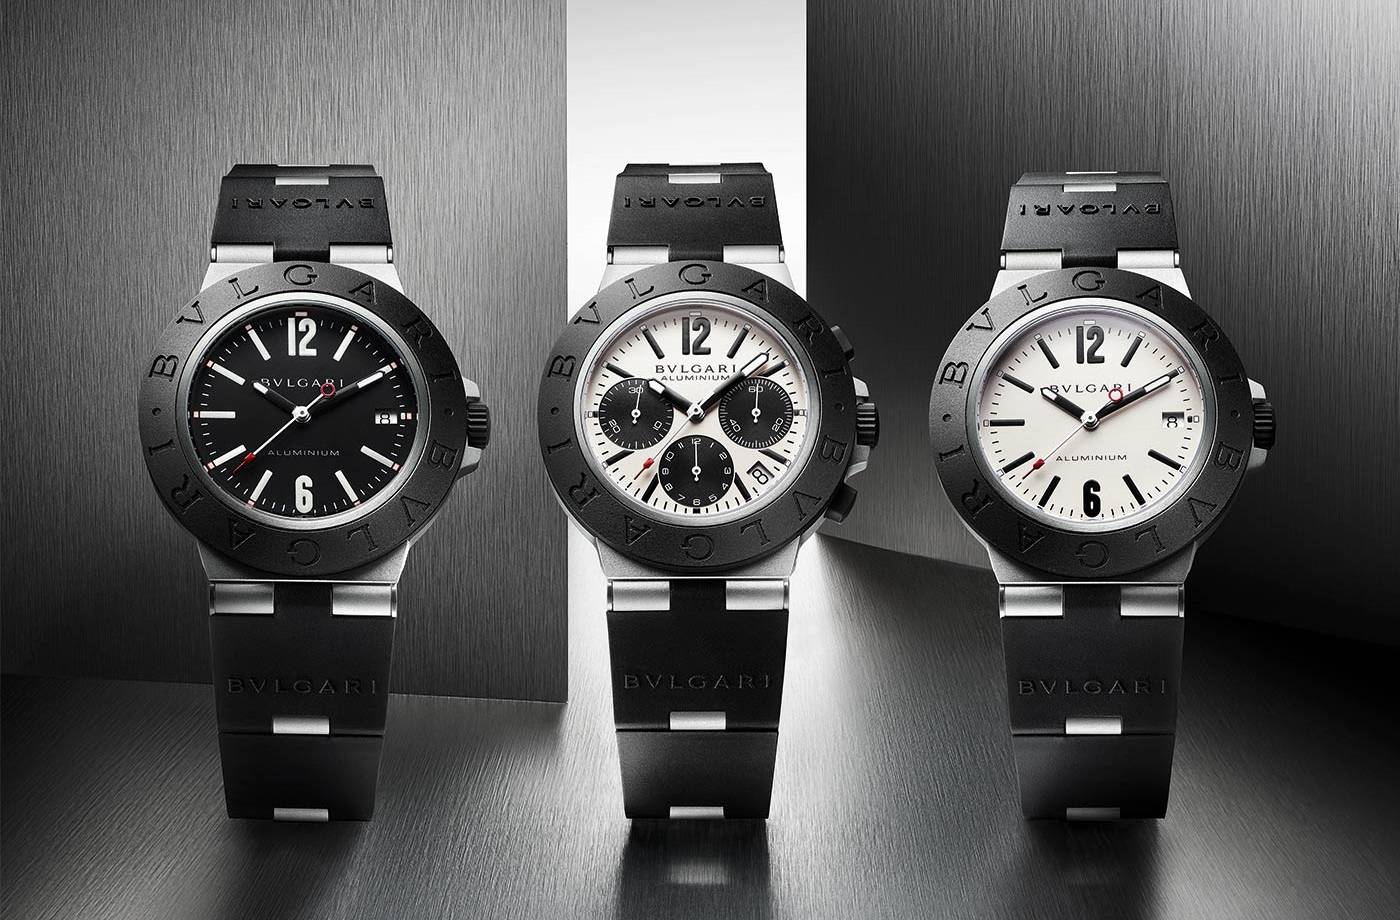 Presentando el nuevo Bulgari Aluminium watch